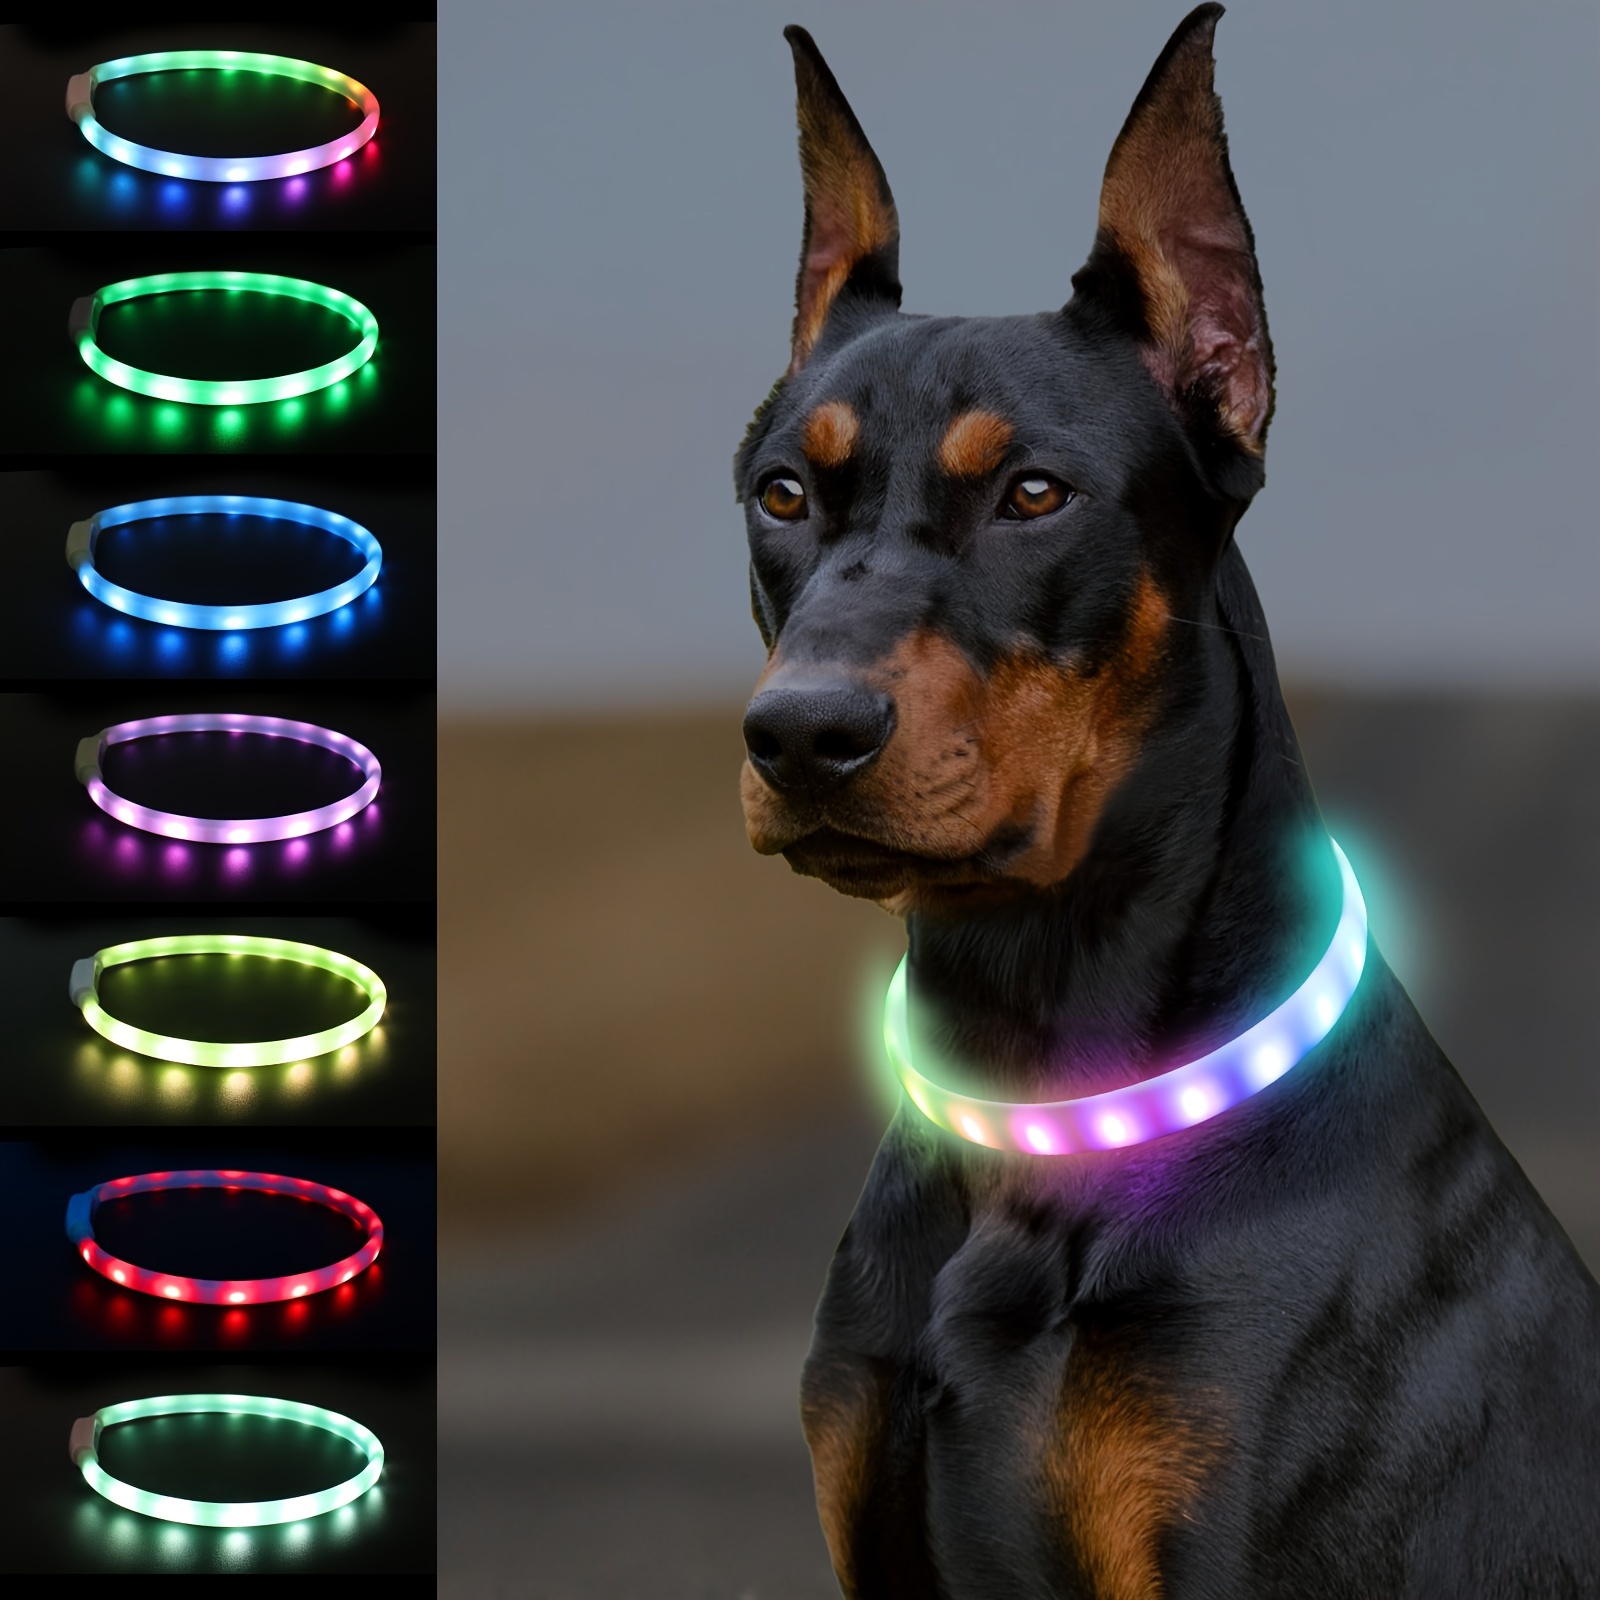 Medium Dog Collar